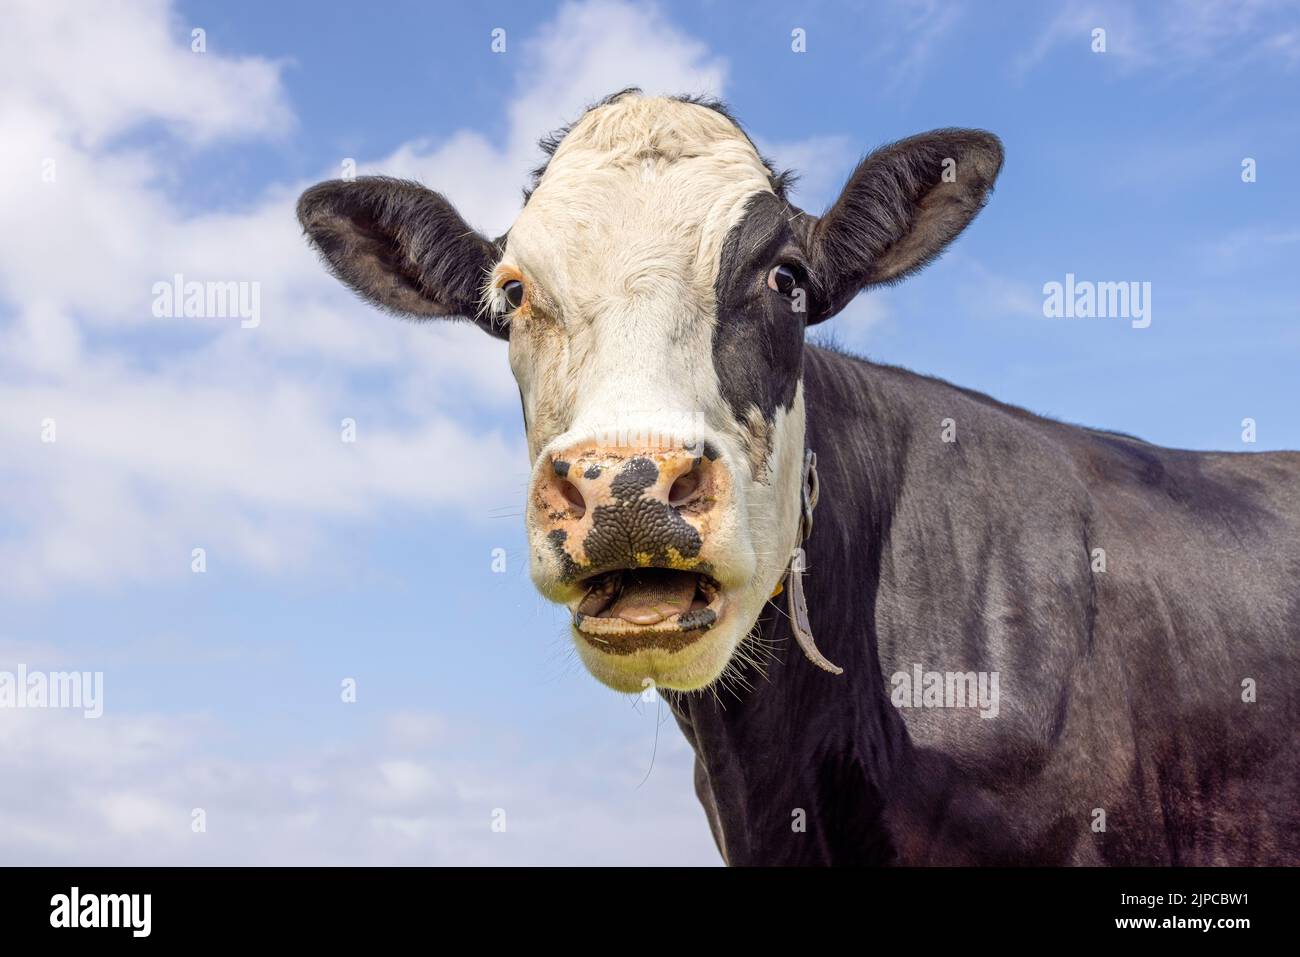 Divertente ritratto di una mucca da alare, bocca aperta, la testa di un bianco e nero, mostrando denti lingua e gengive durante la masticazione Foto Stock